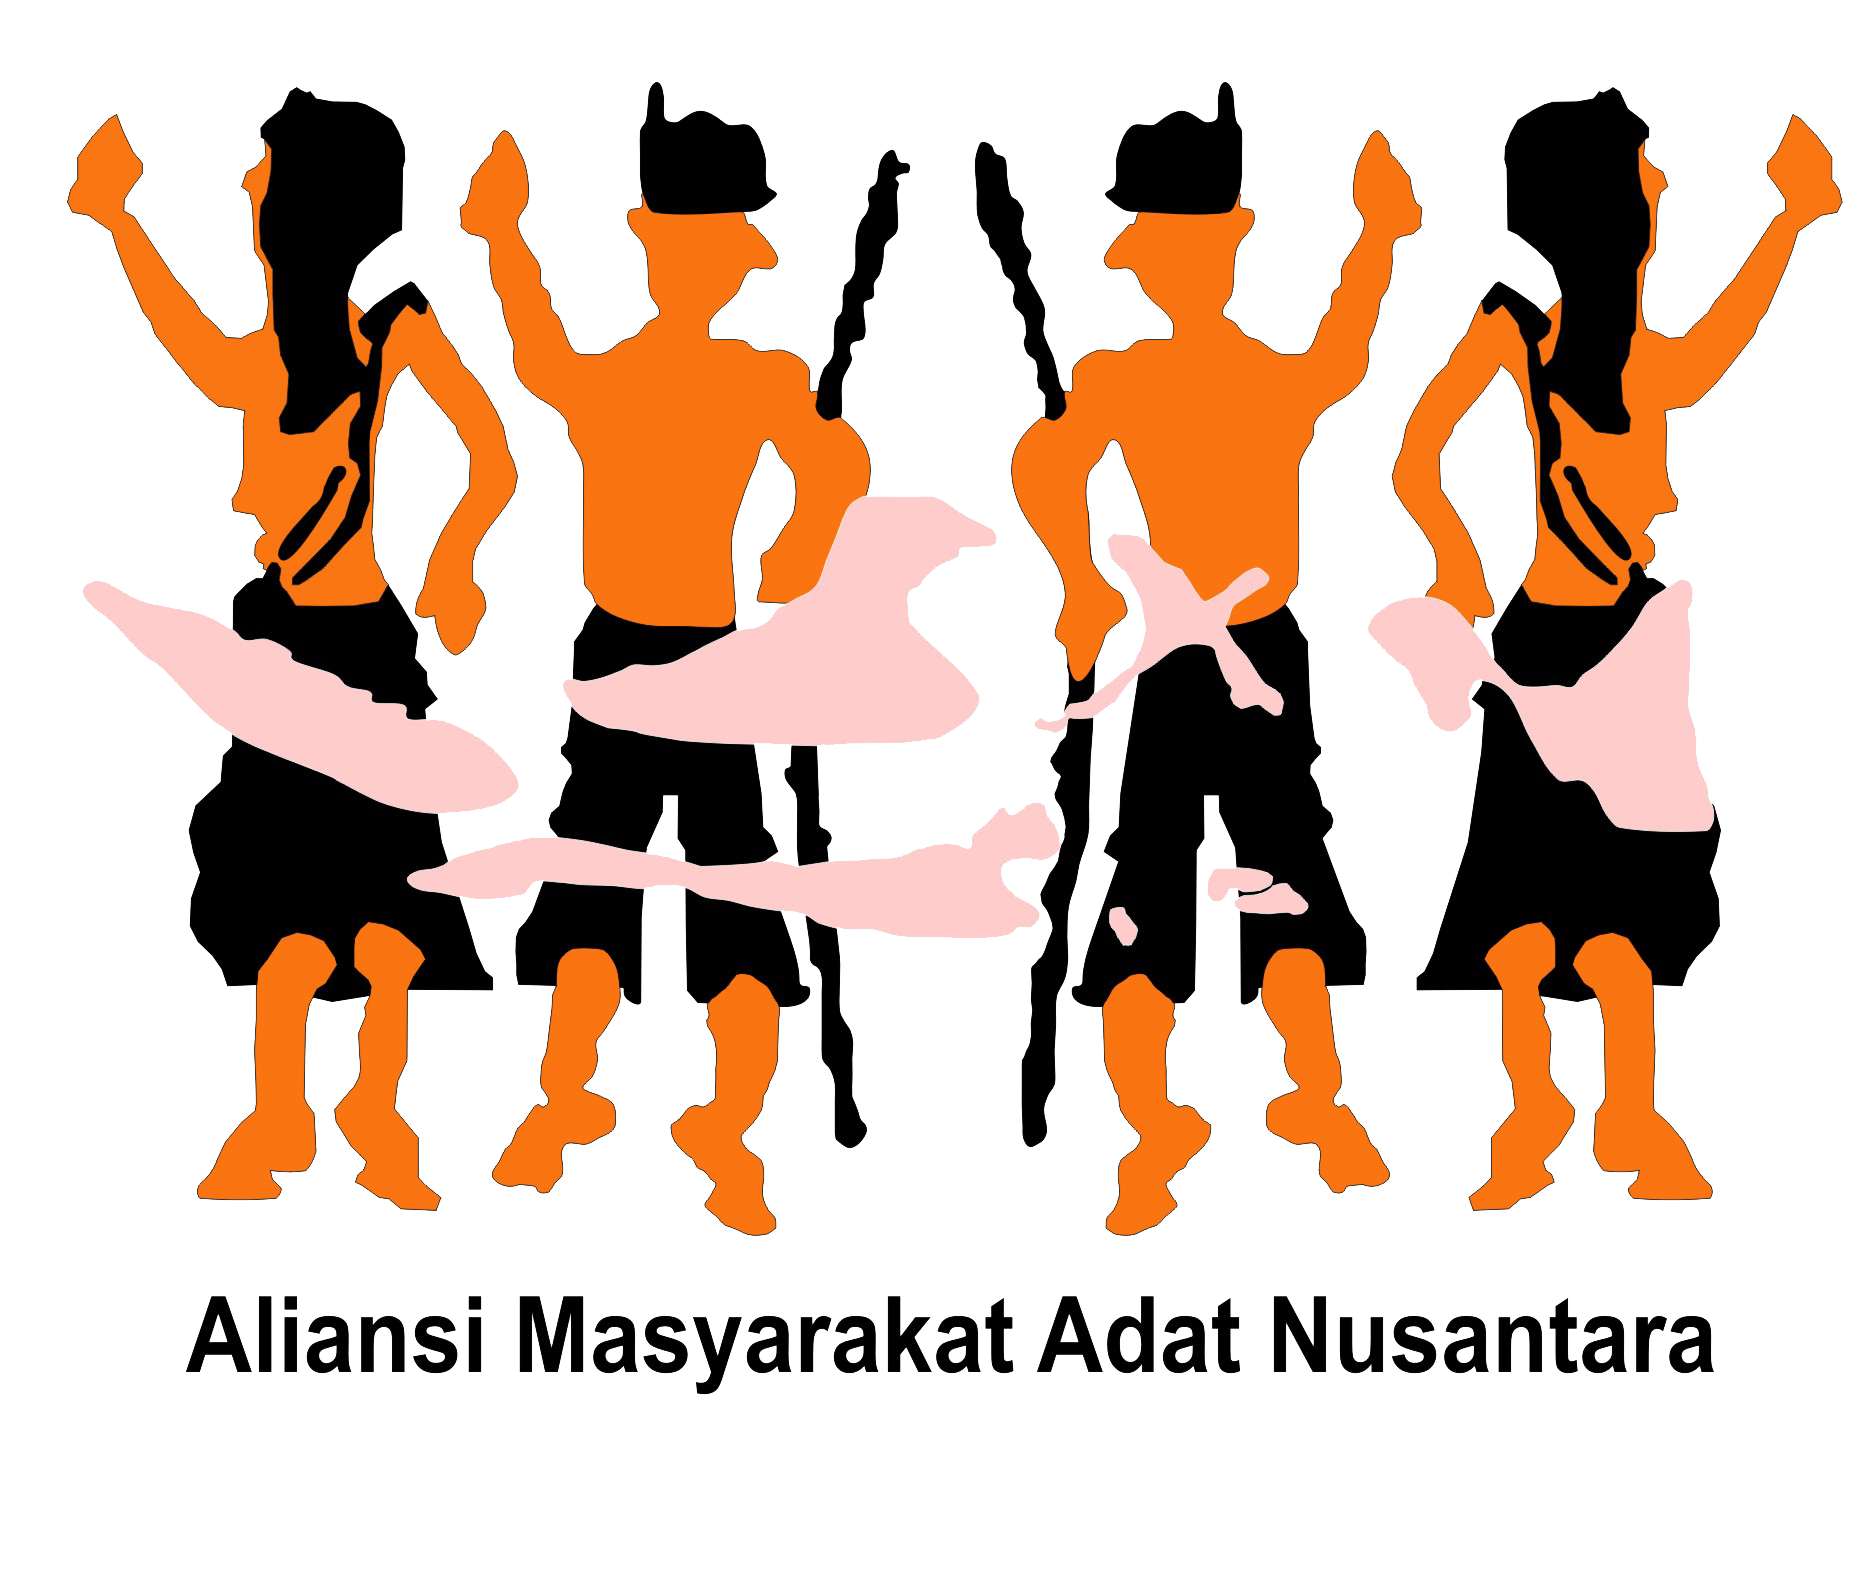 Alliance des peuples autochtones de l’archipel (AMAN), Indonésie